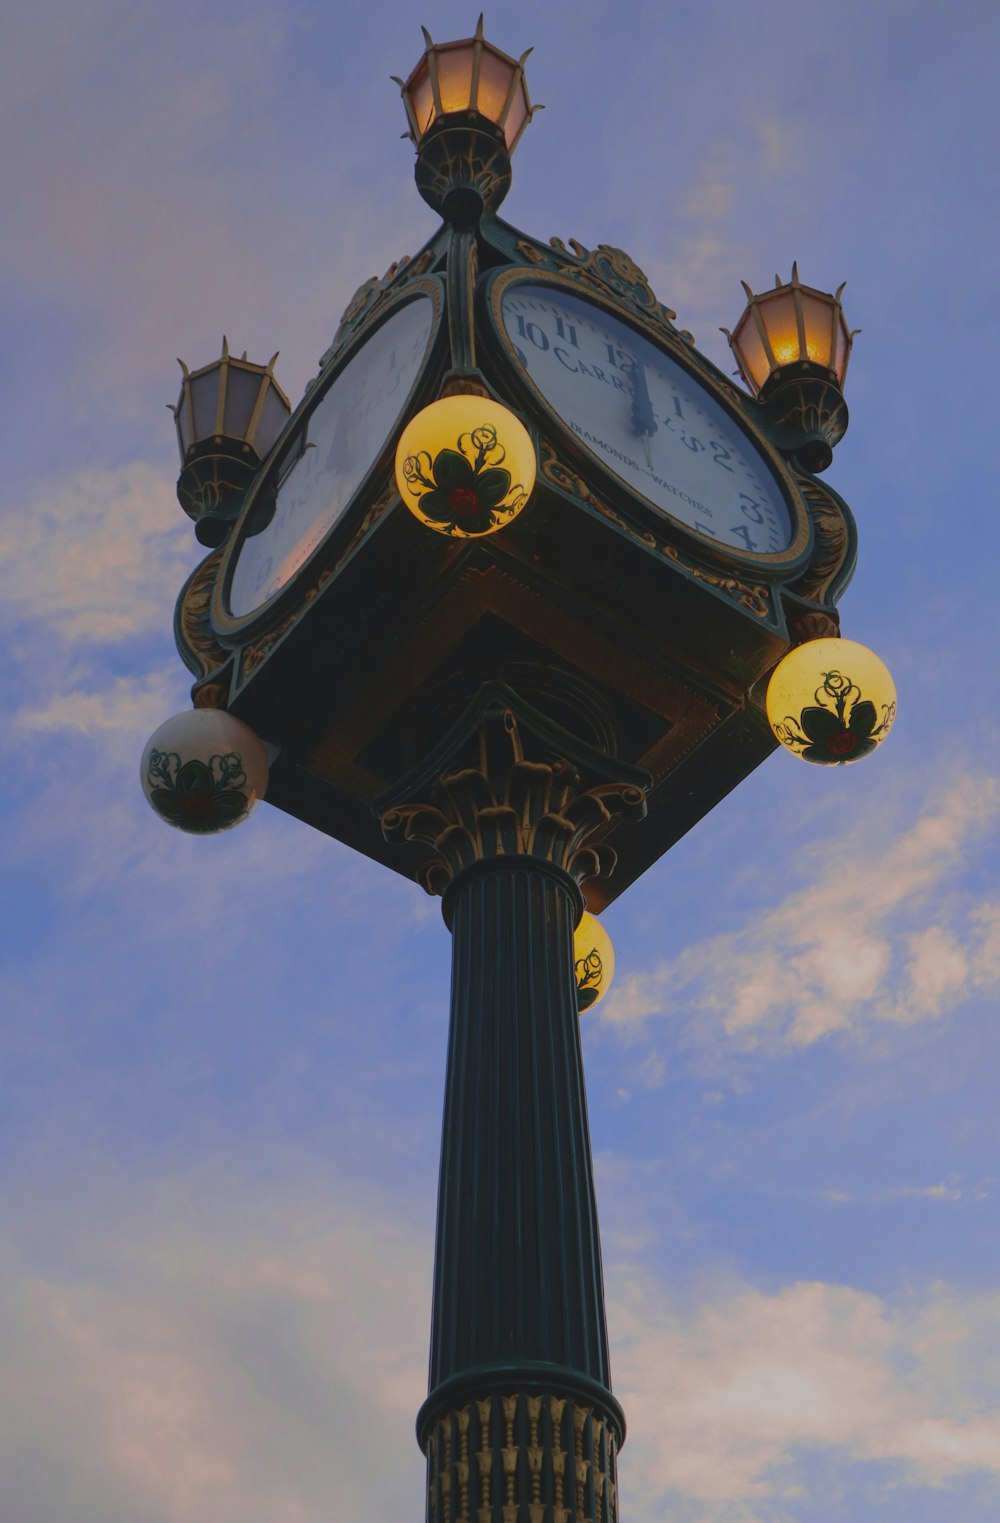 Eine Uhr auf einem Mast mit einem Himmel im Hintergrund